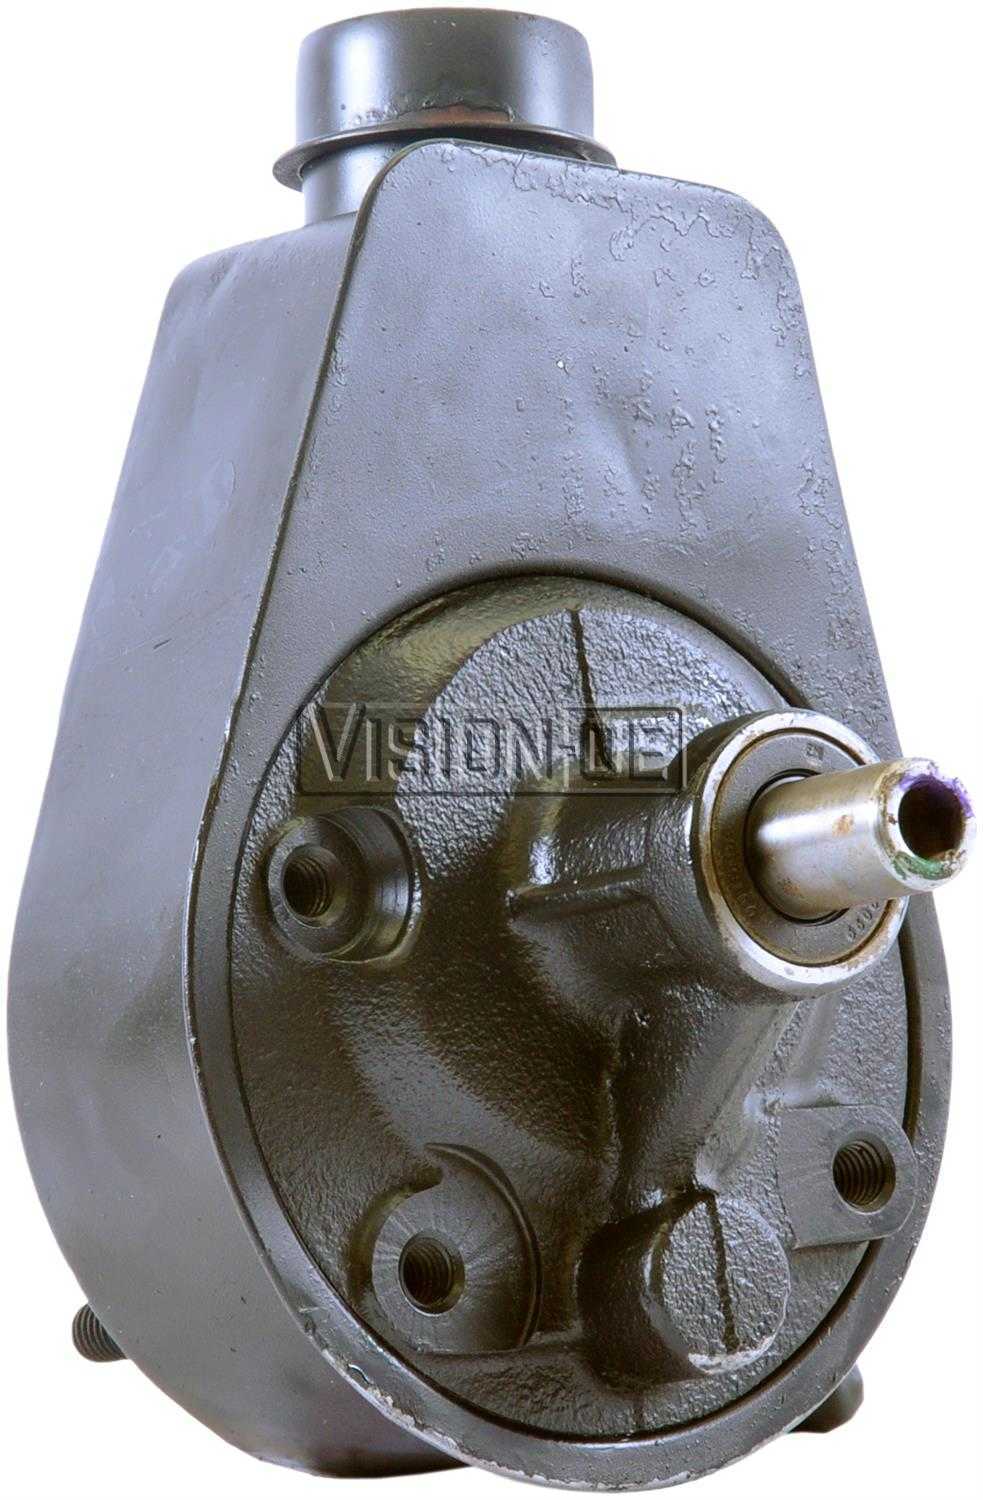 VISION-OE - Reman Power Steering Pump - VOE 731-2156